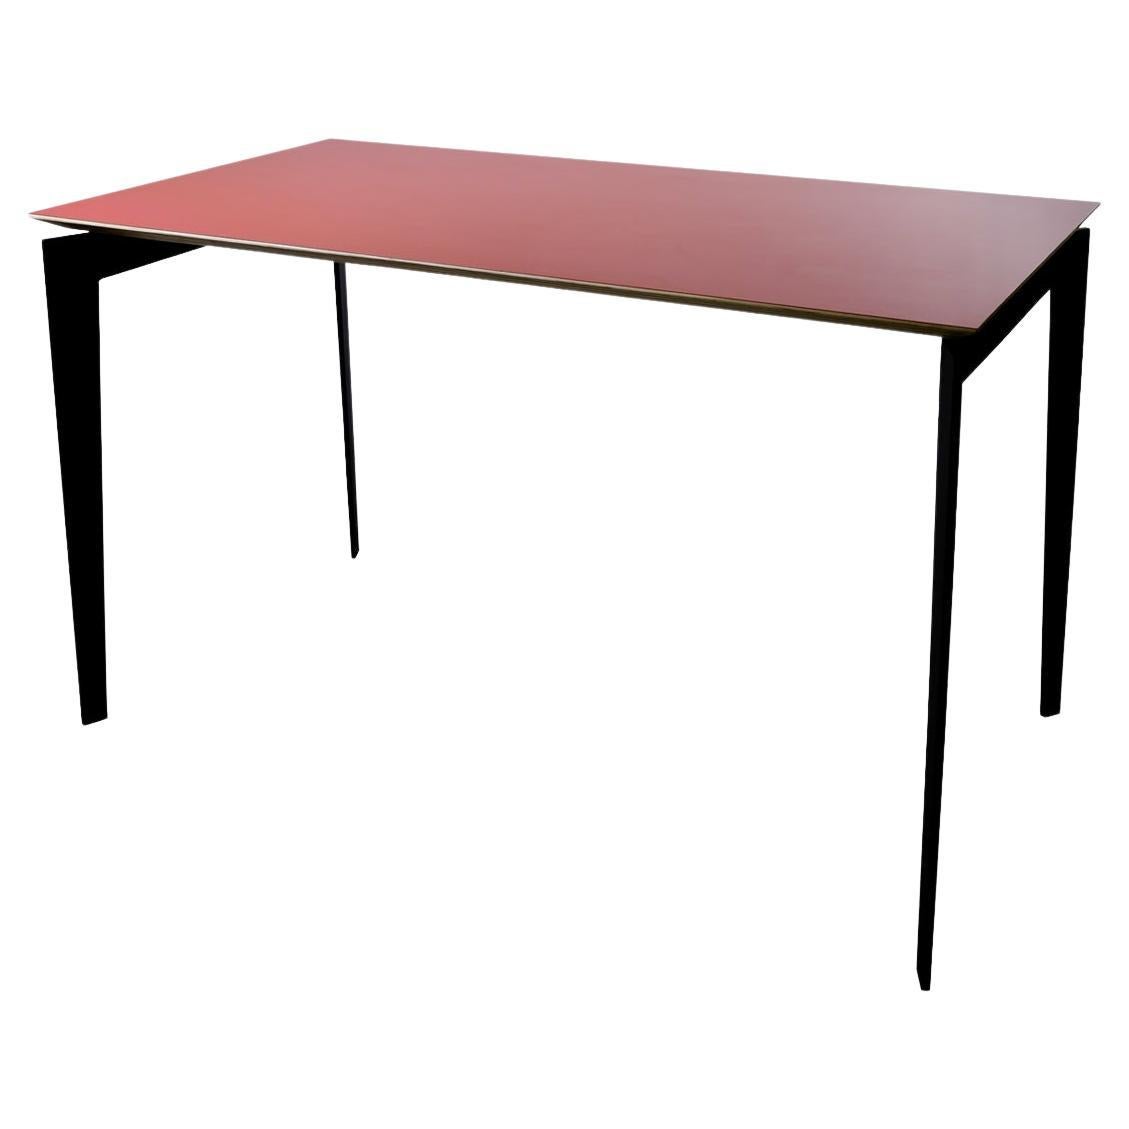 Table italienne contemporaine en acier et contreplaqué, Armabianca 01 par Errante